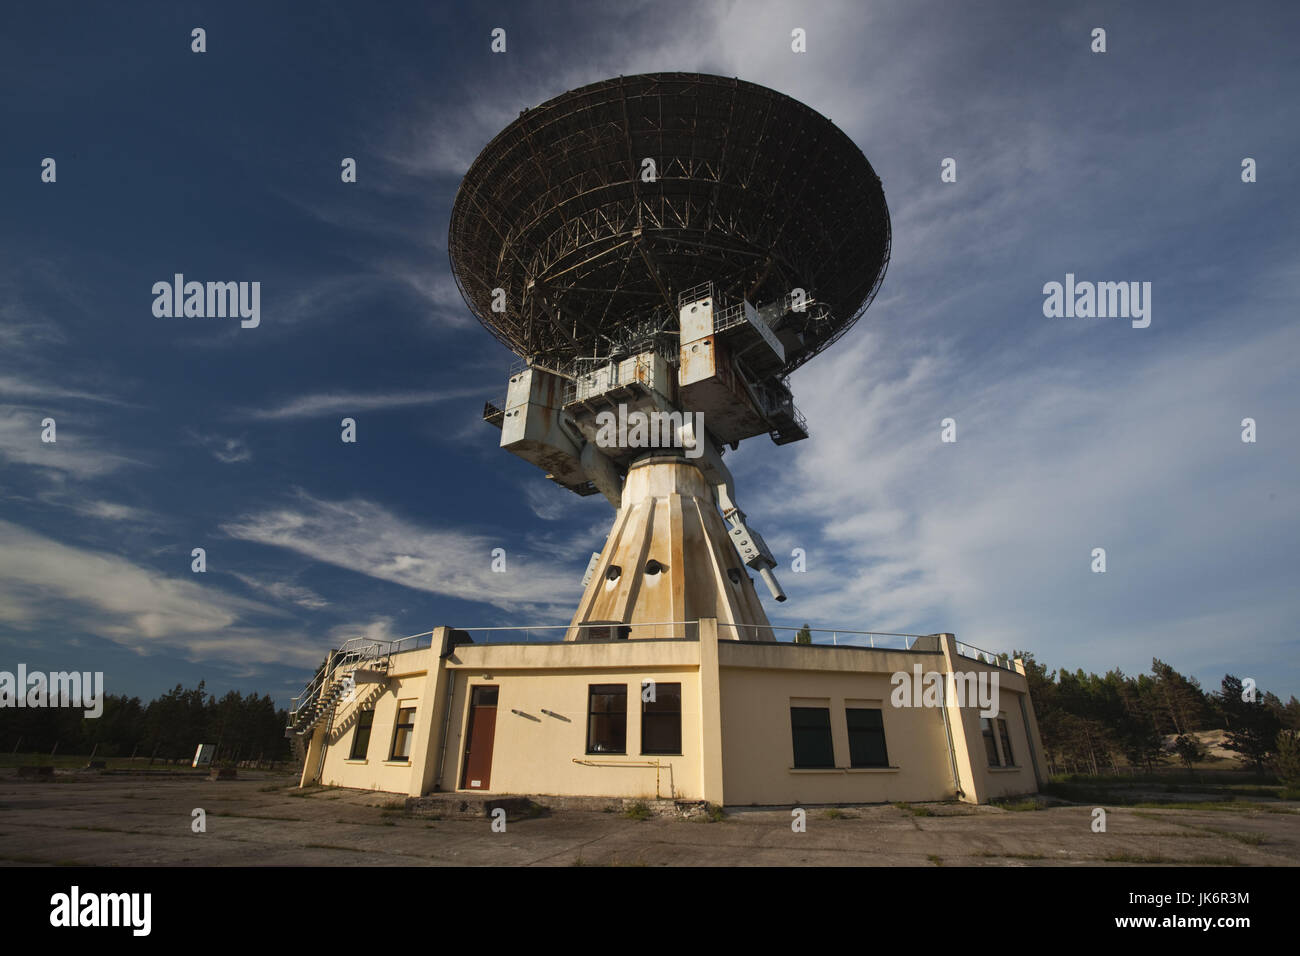 La lettonia, occidentale della Lettonia, regione di Kurzeme, Irbene, Ventspils Radio internazionale centro di astronomia, dell era sovietica R-32, 600 ton radio telescopio di spionaggio Foto Stock